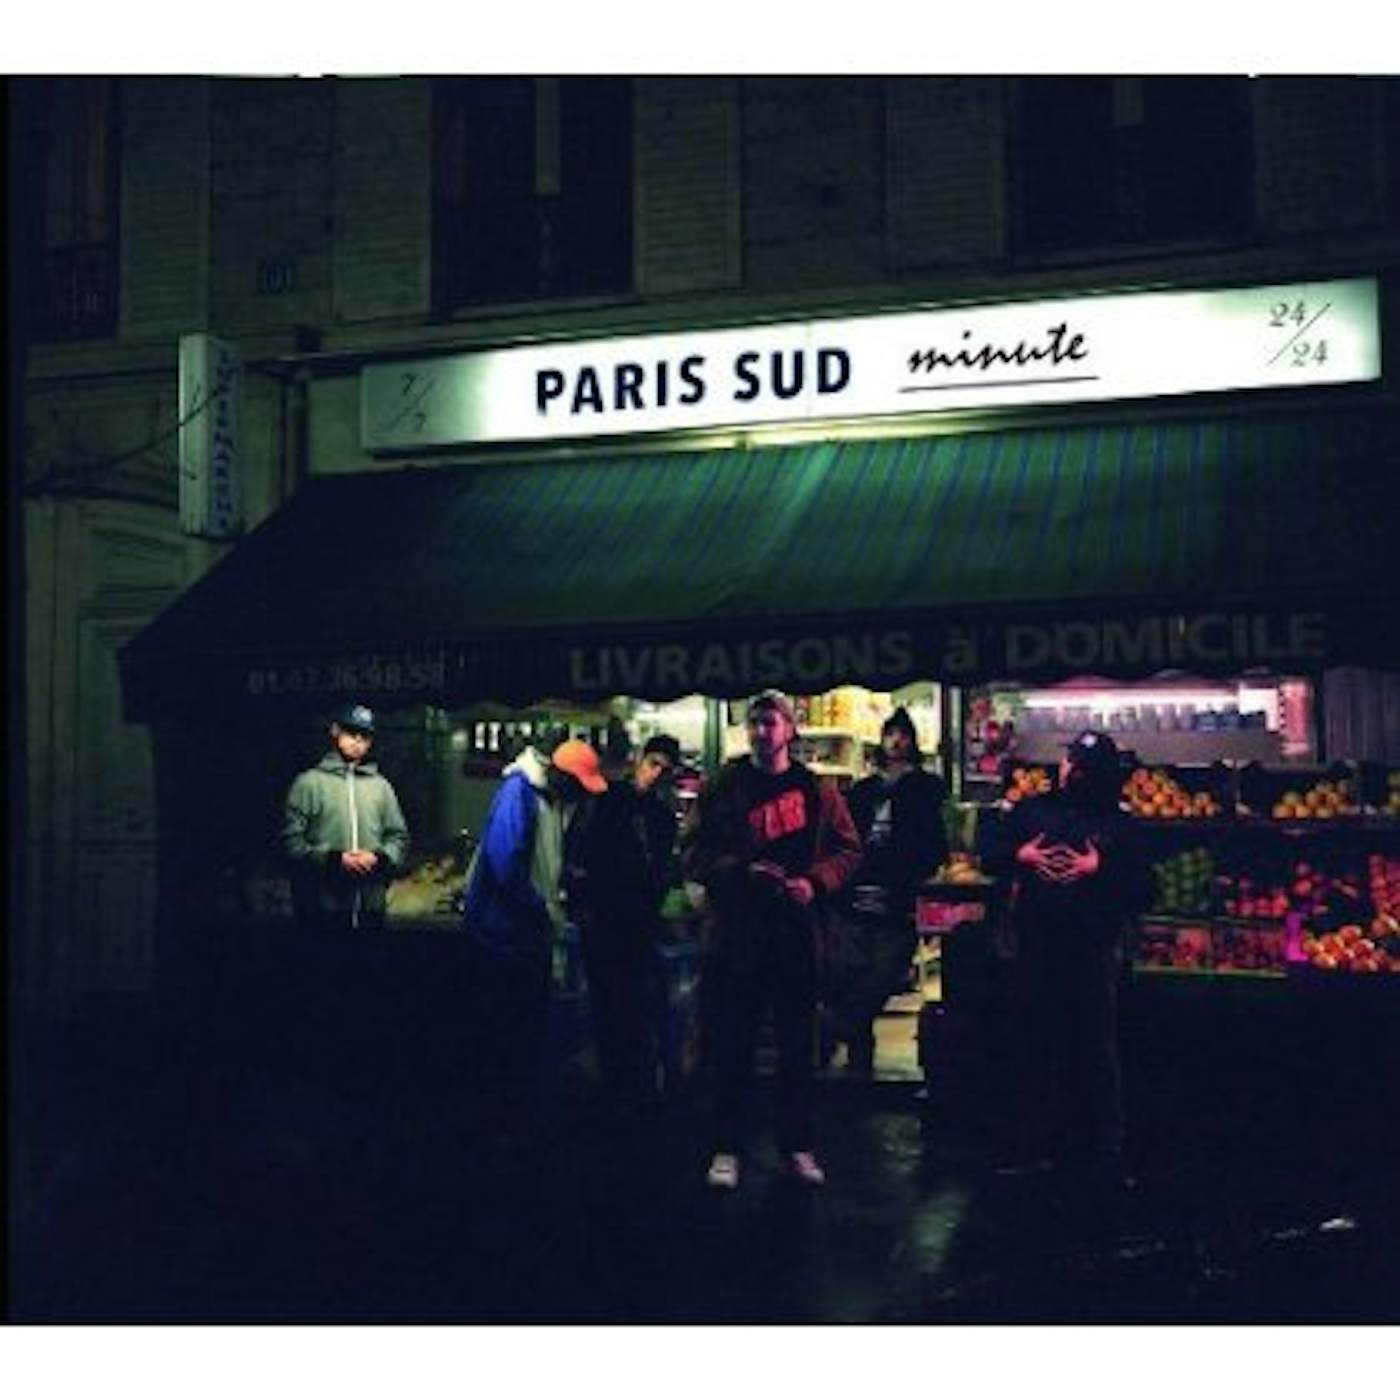 1995 PARIS SUD MINUTE CD